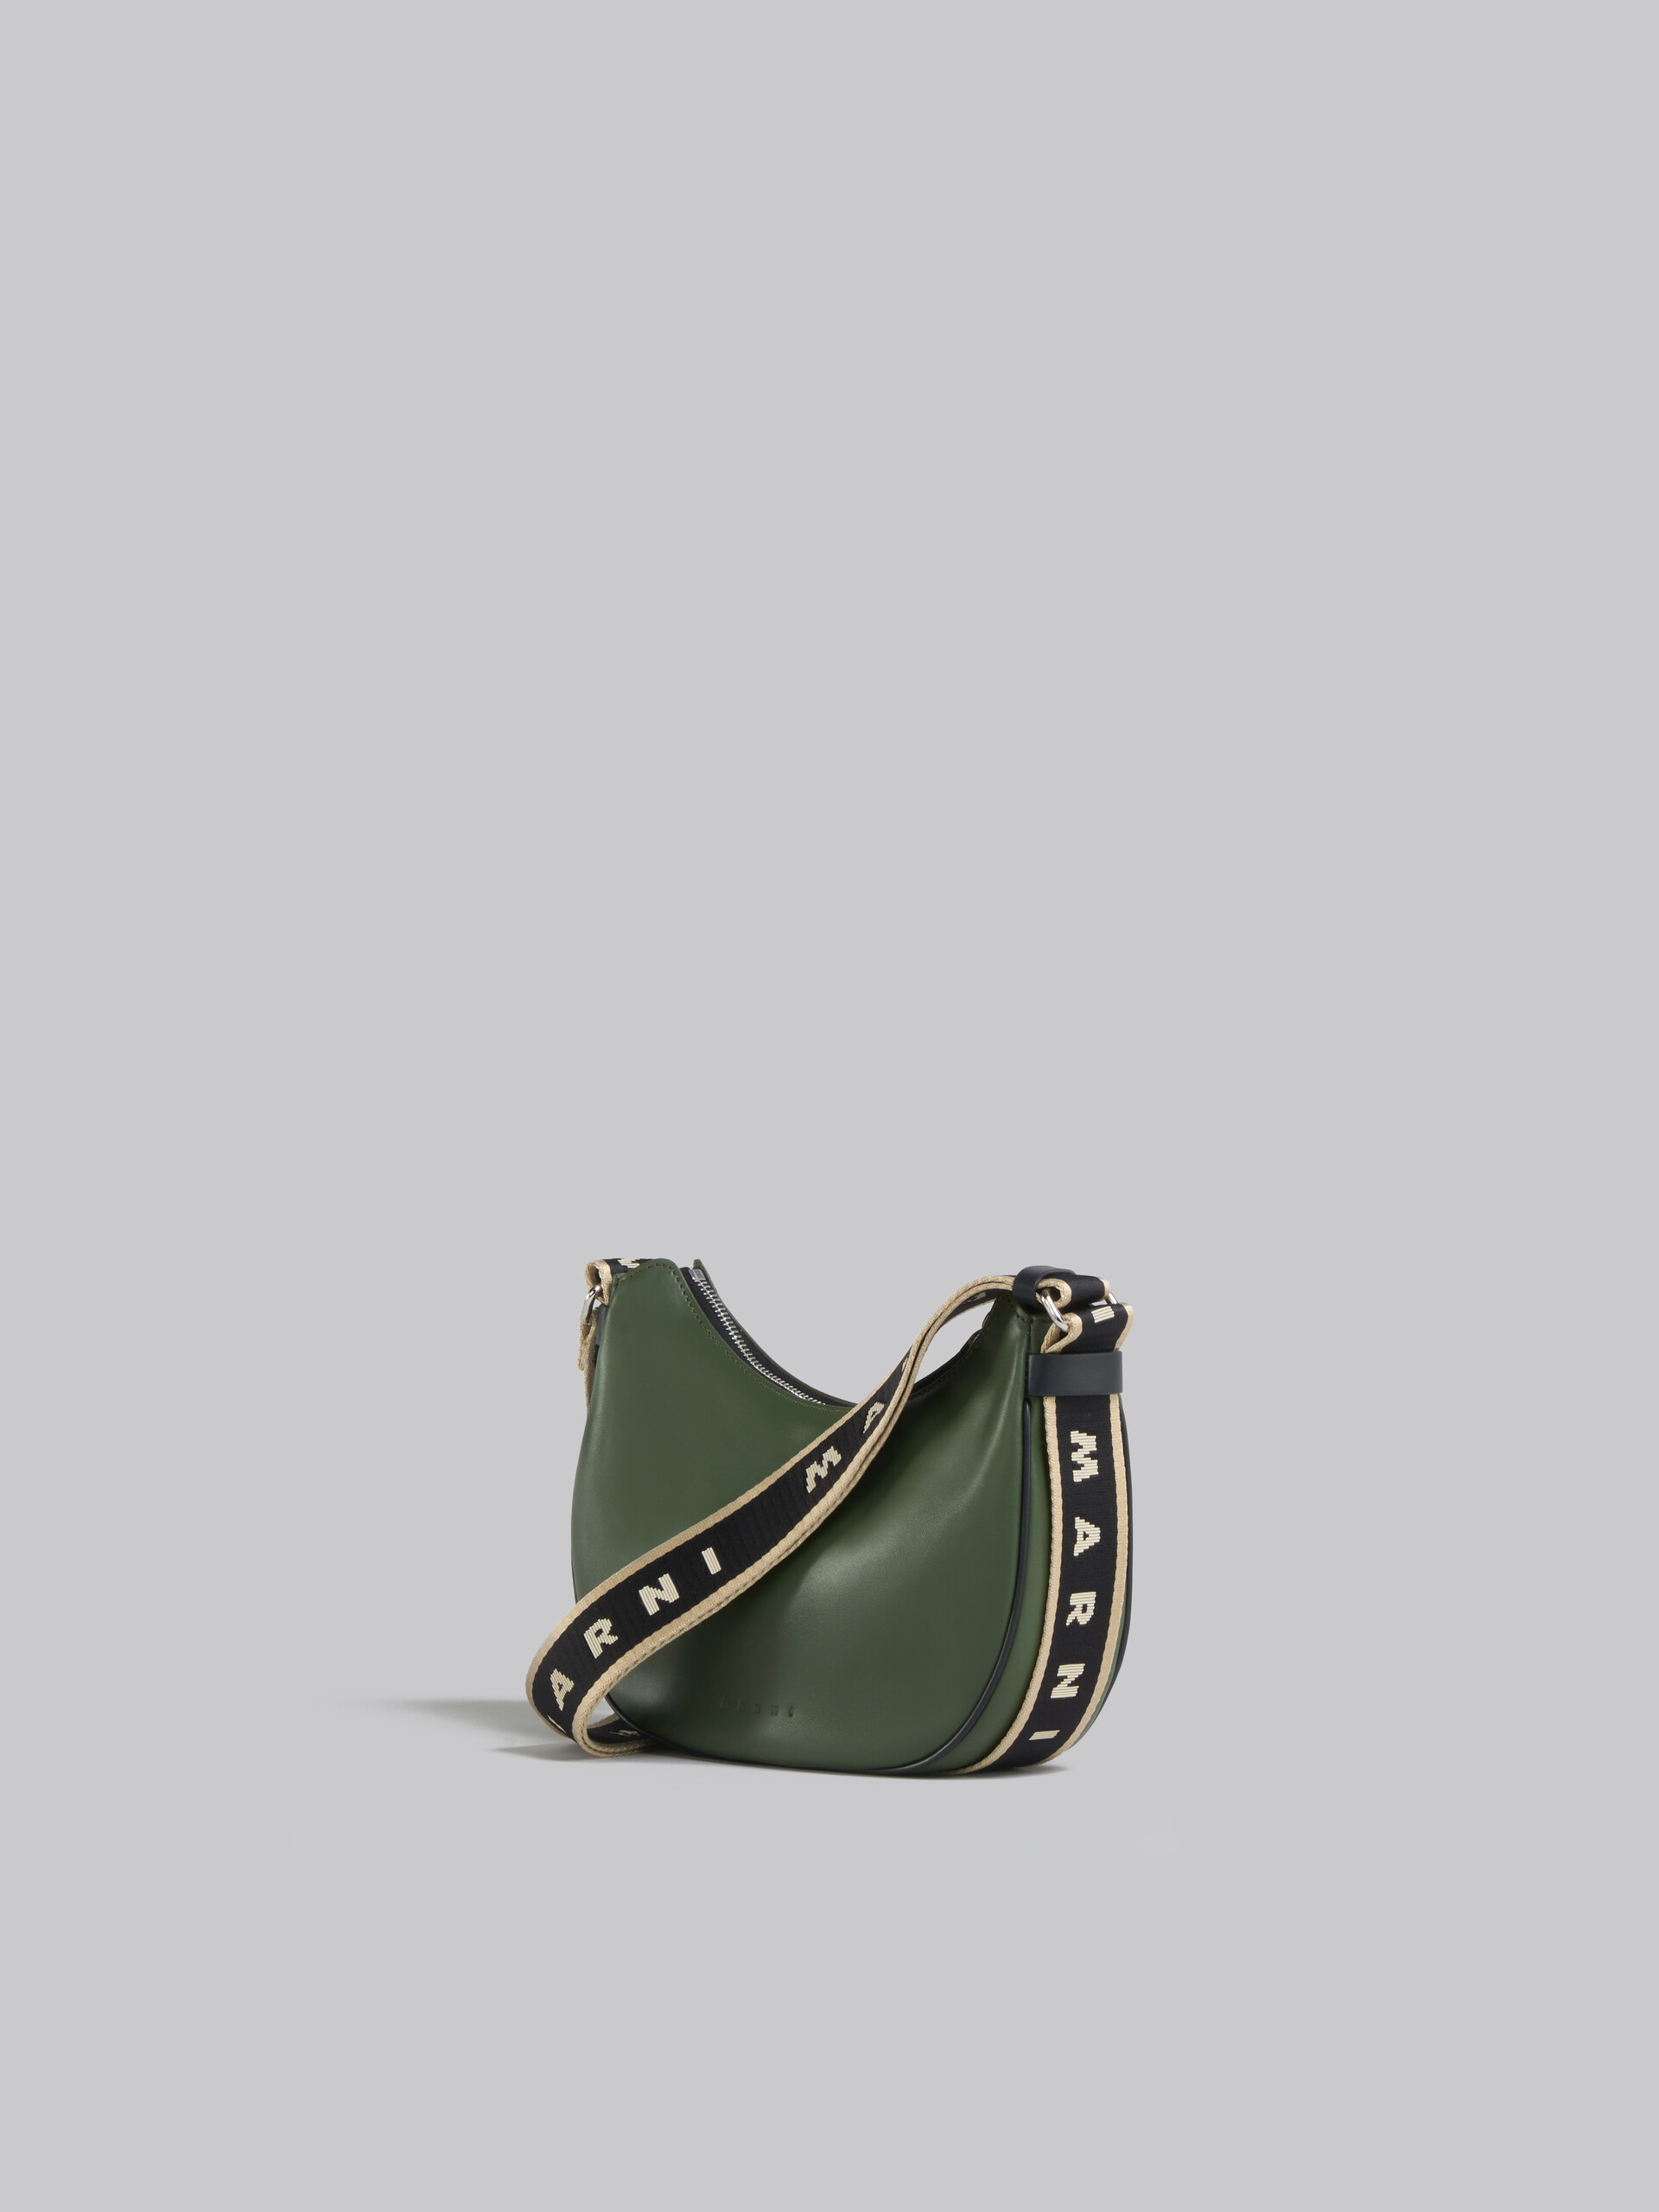 Bey Bag in green leather - Shoulder Bag - Image 3